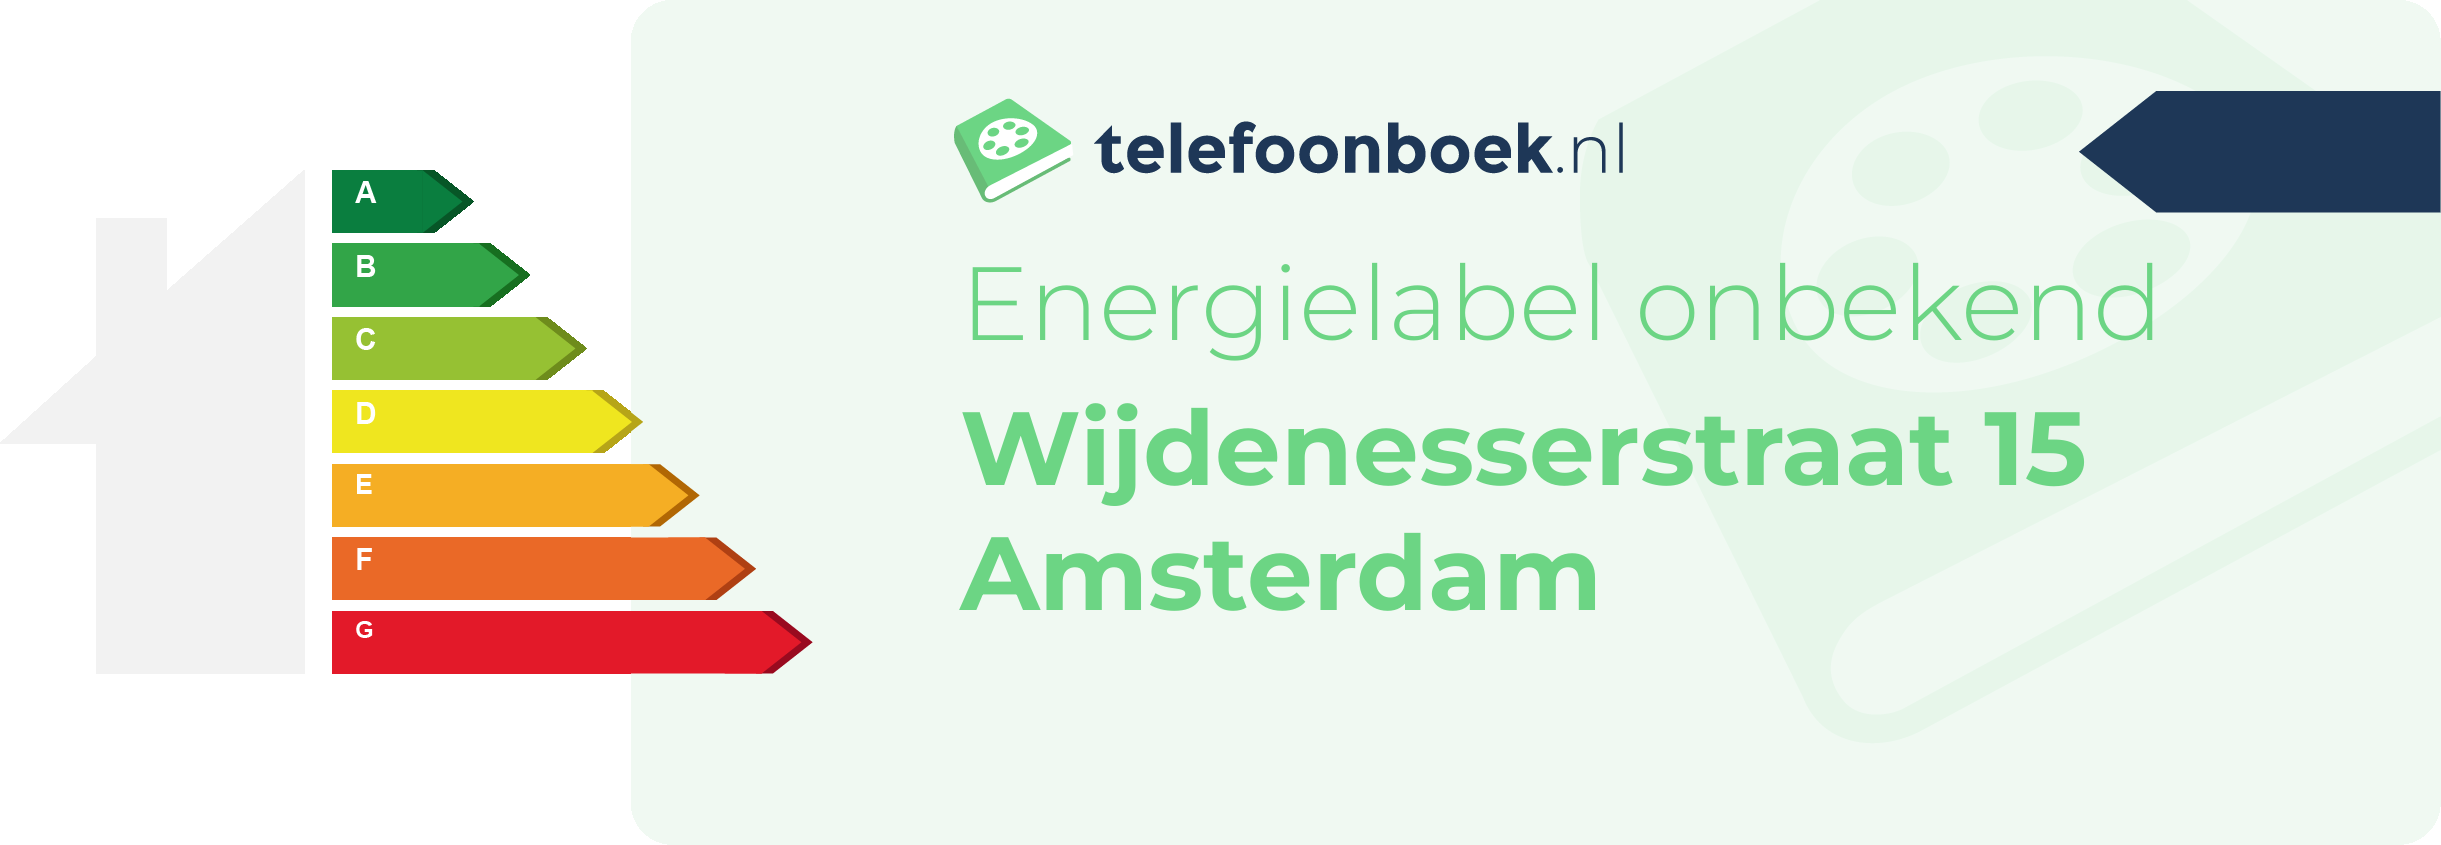 Energielabel Wijdenesserstraat 15 Amsterdam